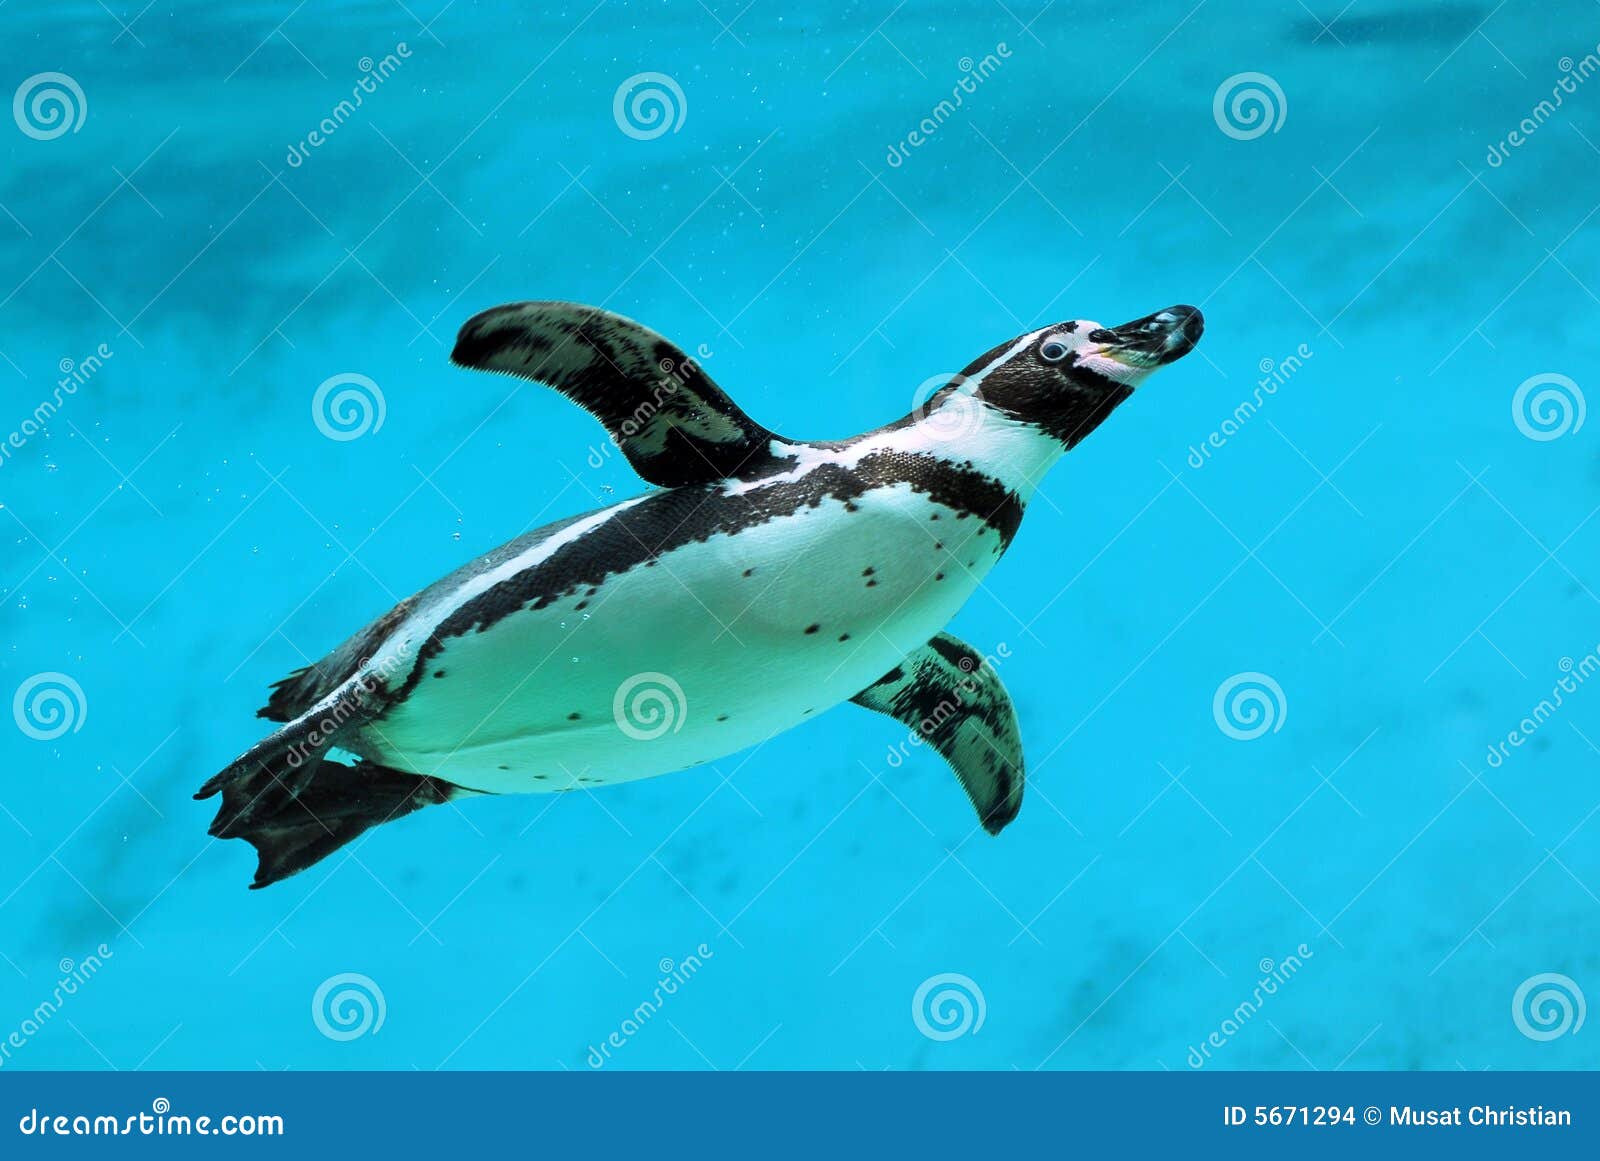 humboldt penguin under water